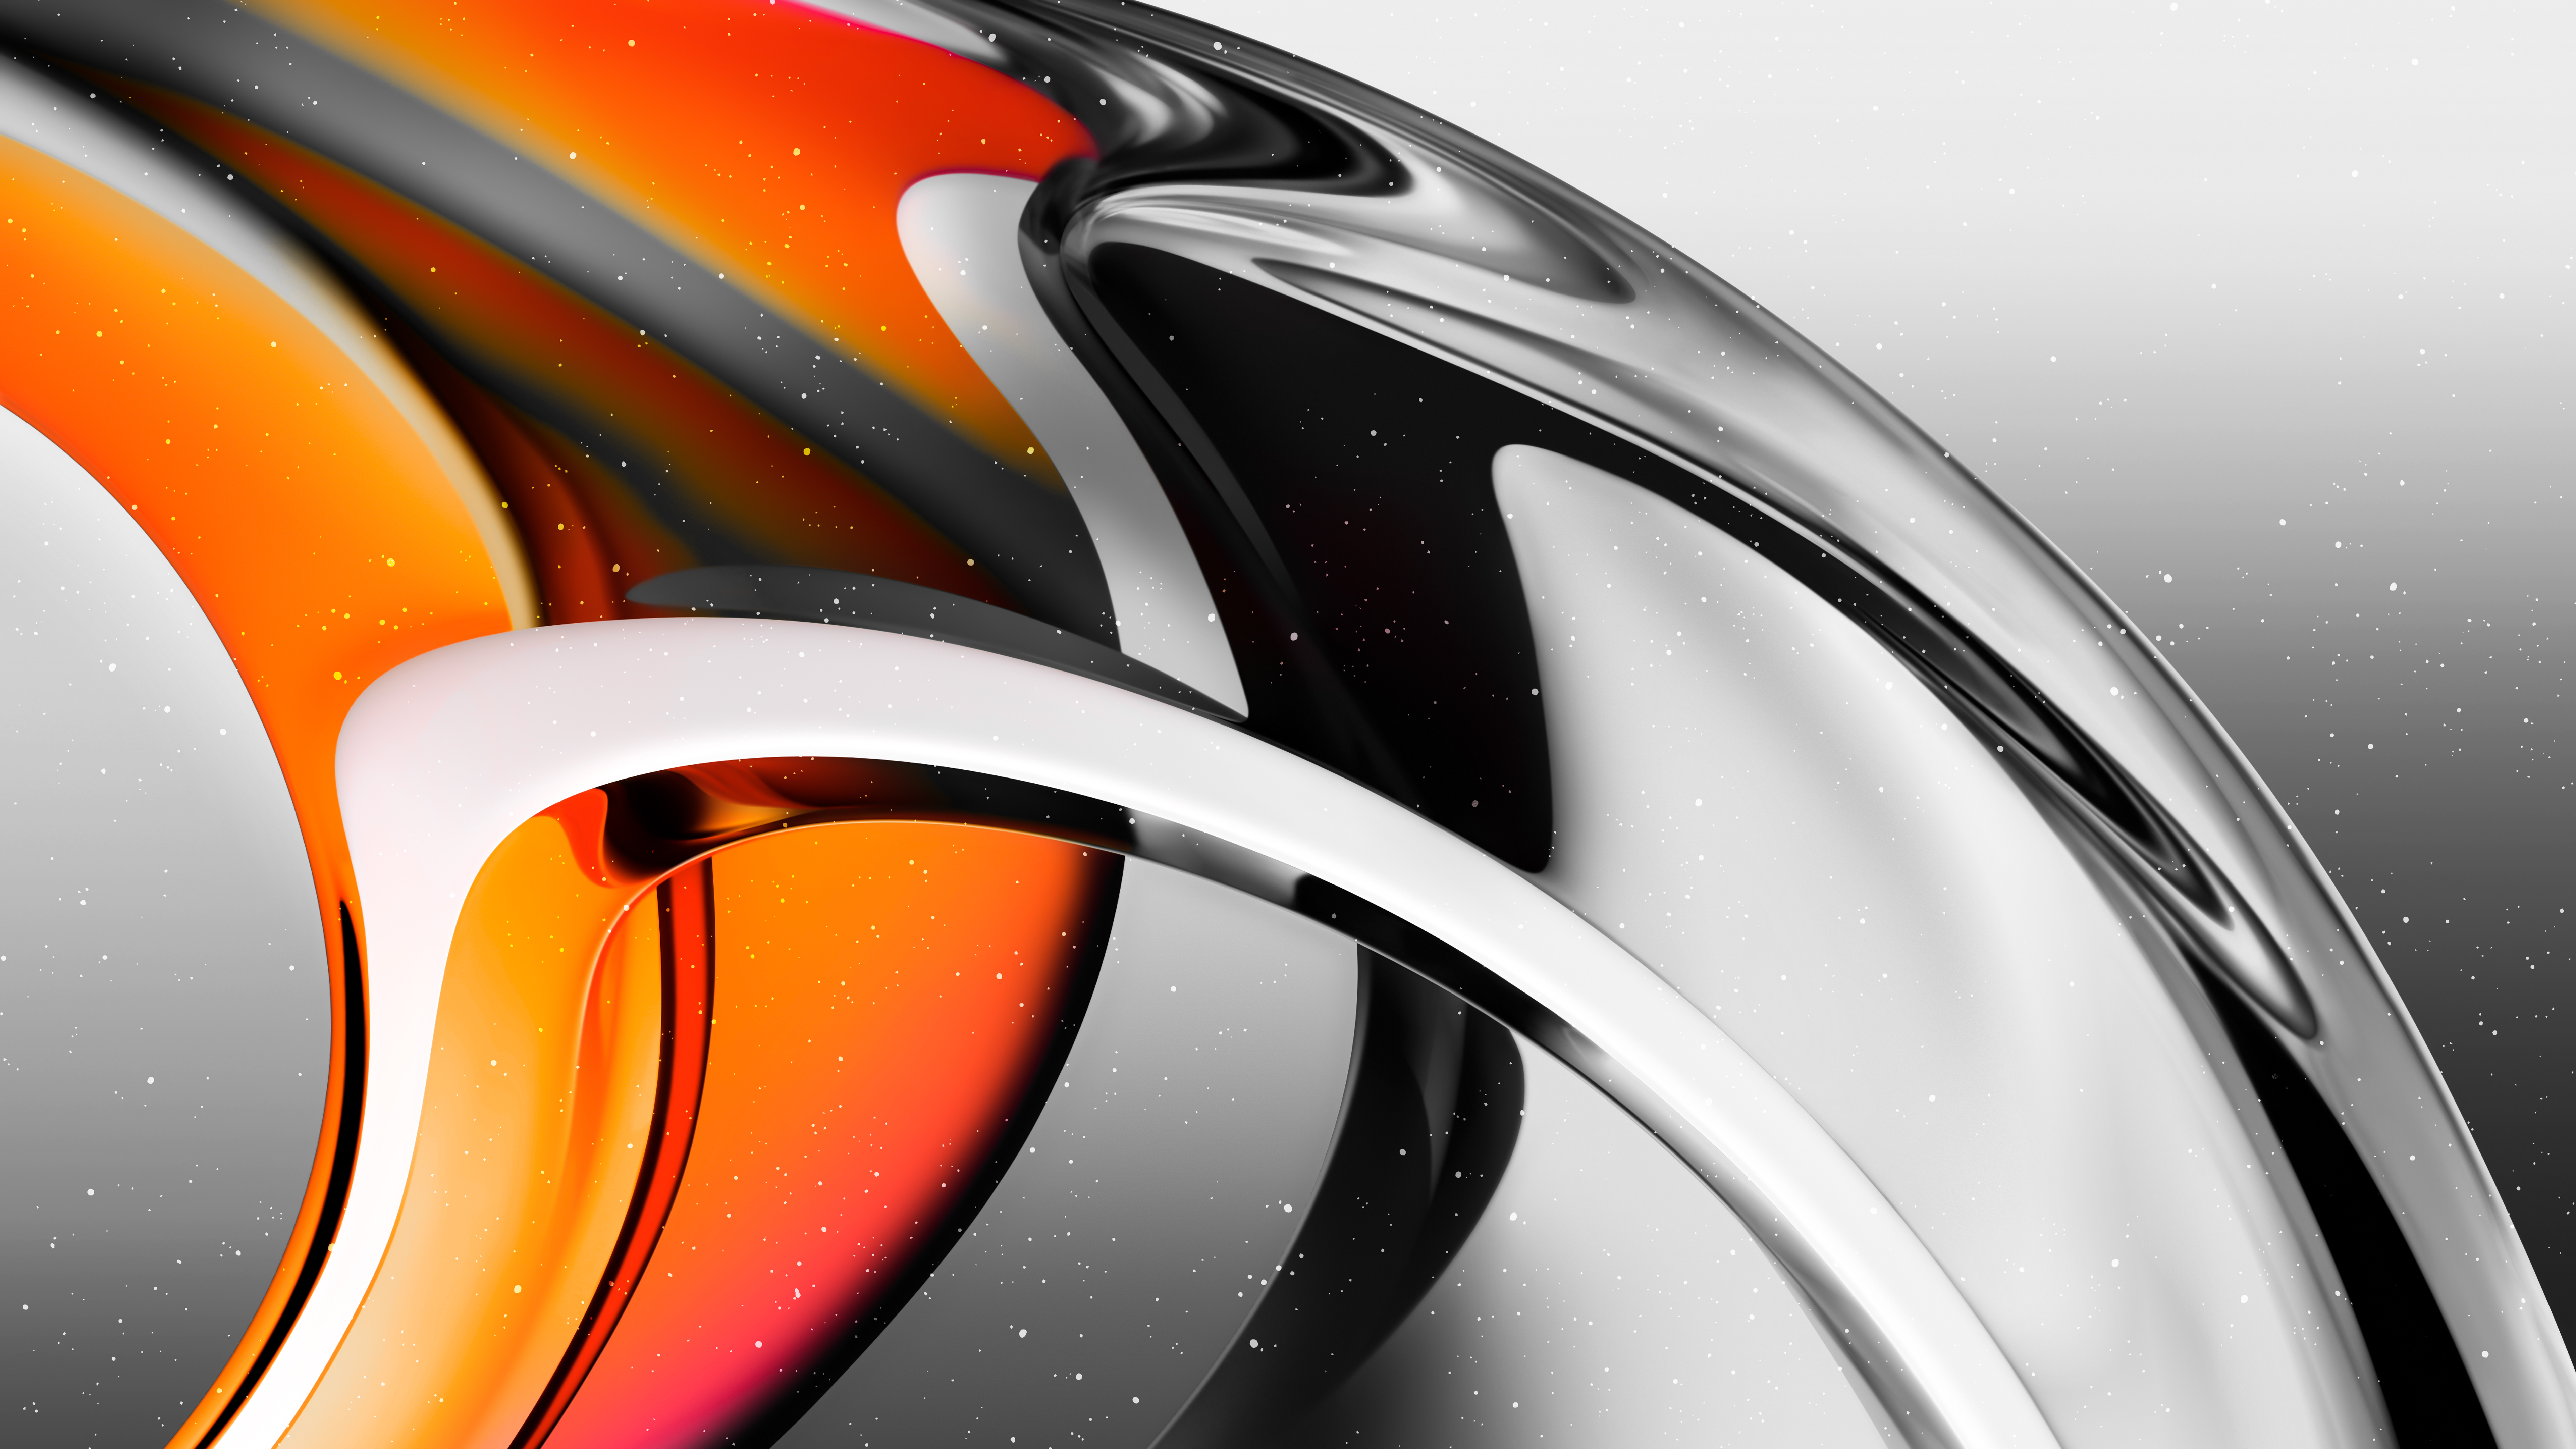 Glass Transparent Orange Design Abstract: Thiết kế đồ vật luôn mang tới sự hấp dẫn và tràn đầy sáng tạo cho người xem. Bức tranh kính trong suốt với màu cam trừu tượng chắc chắn sẽ khiến bạn phải trầm trồ bởi sự độc đáo và tinh tế của nó. Hãy đến ngay để chiêm ngưỡng hình ảnh này.